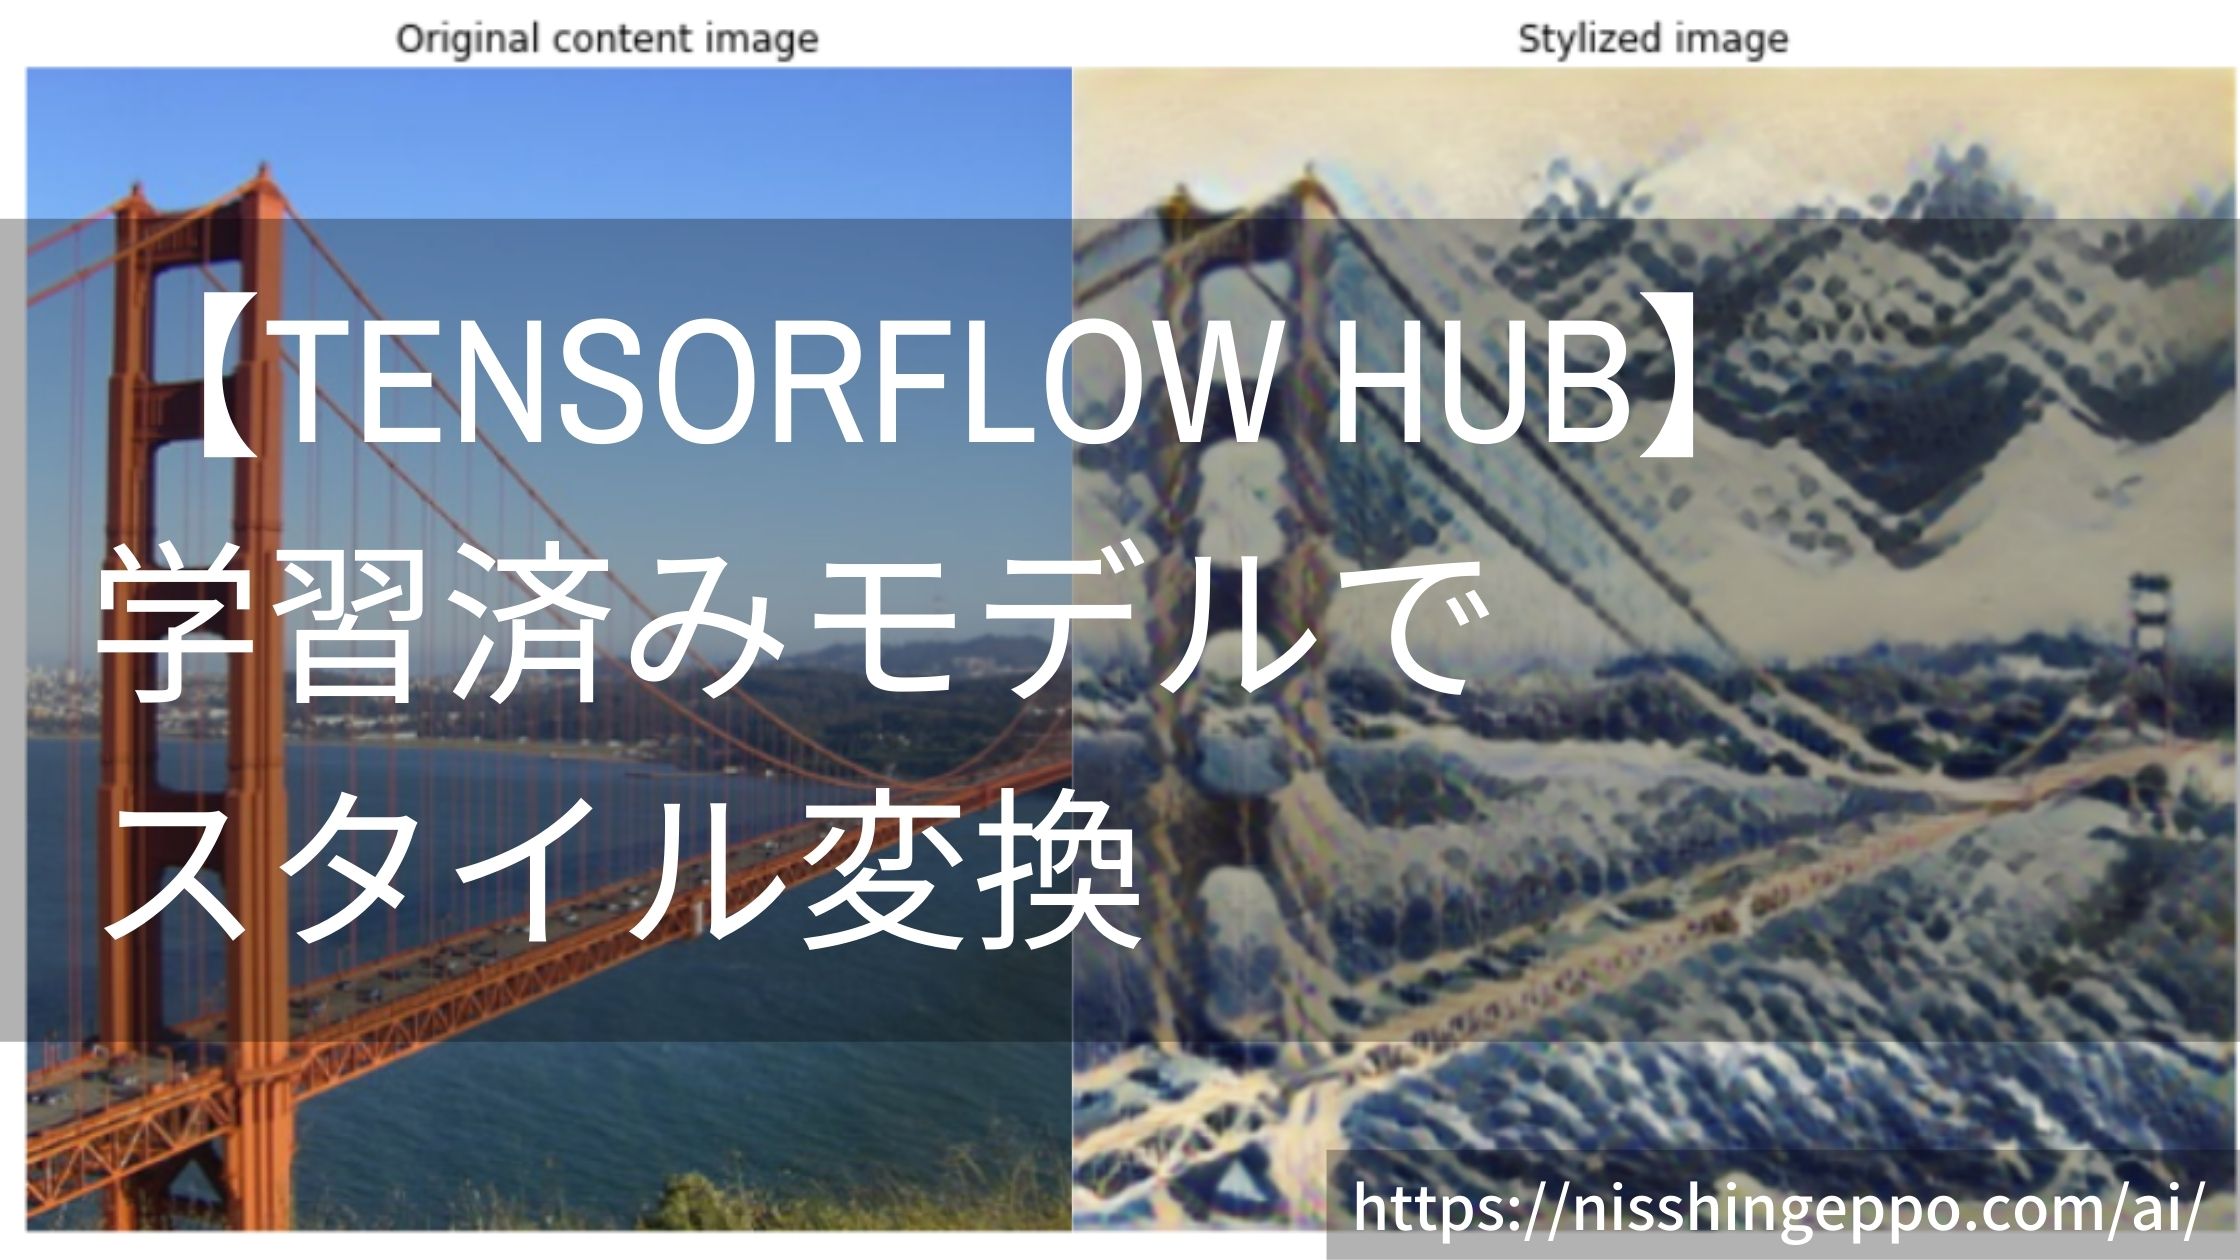 【Tensorflow Hub】学習済みモデルを使ってスタイル変換をする